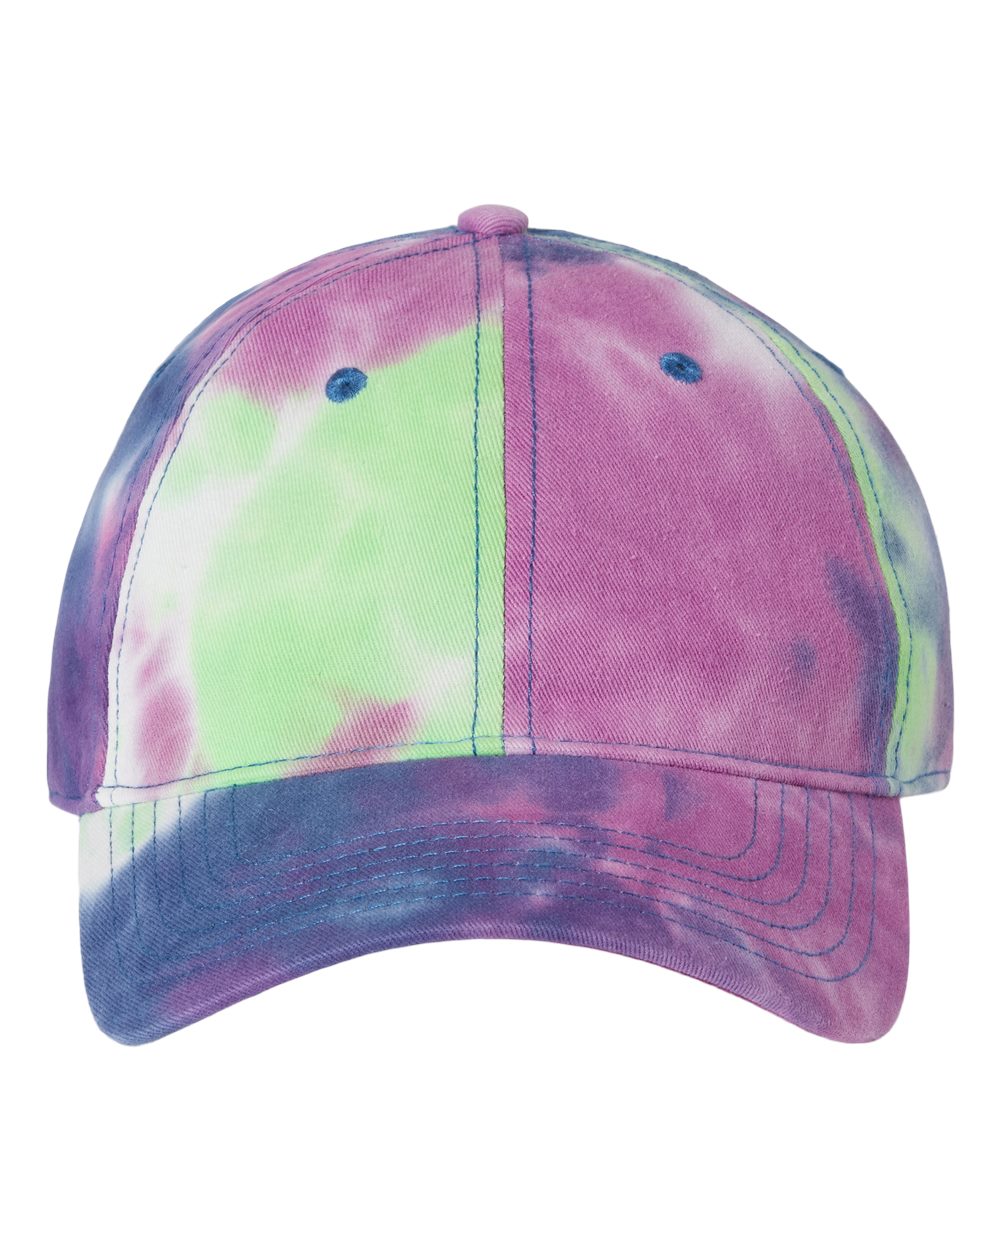 Sportsman - Tie-Dyed Dad Hat - SP400